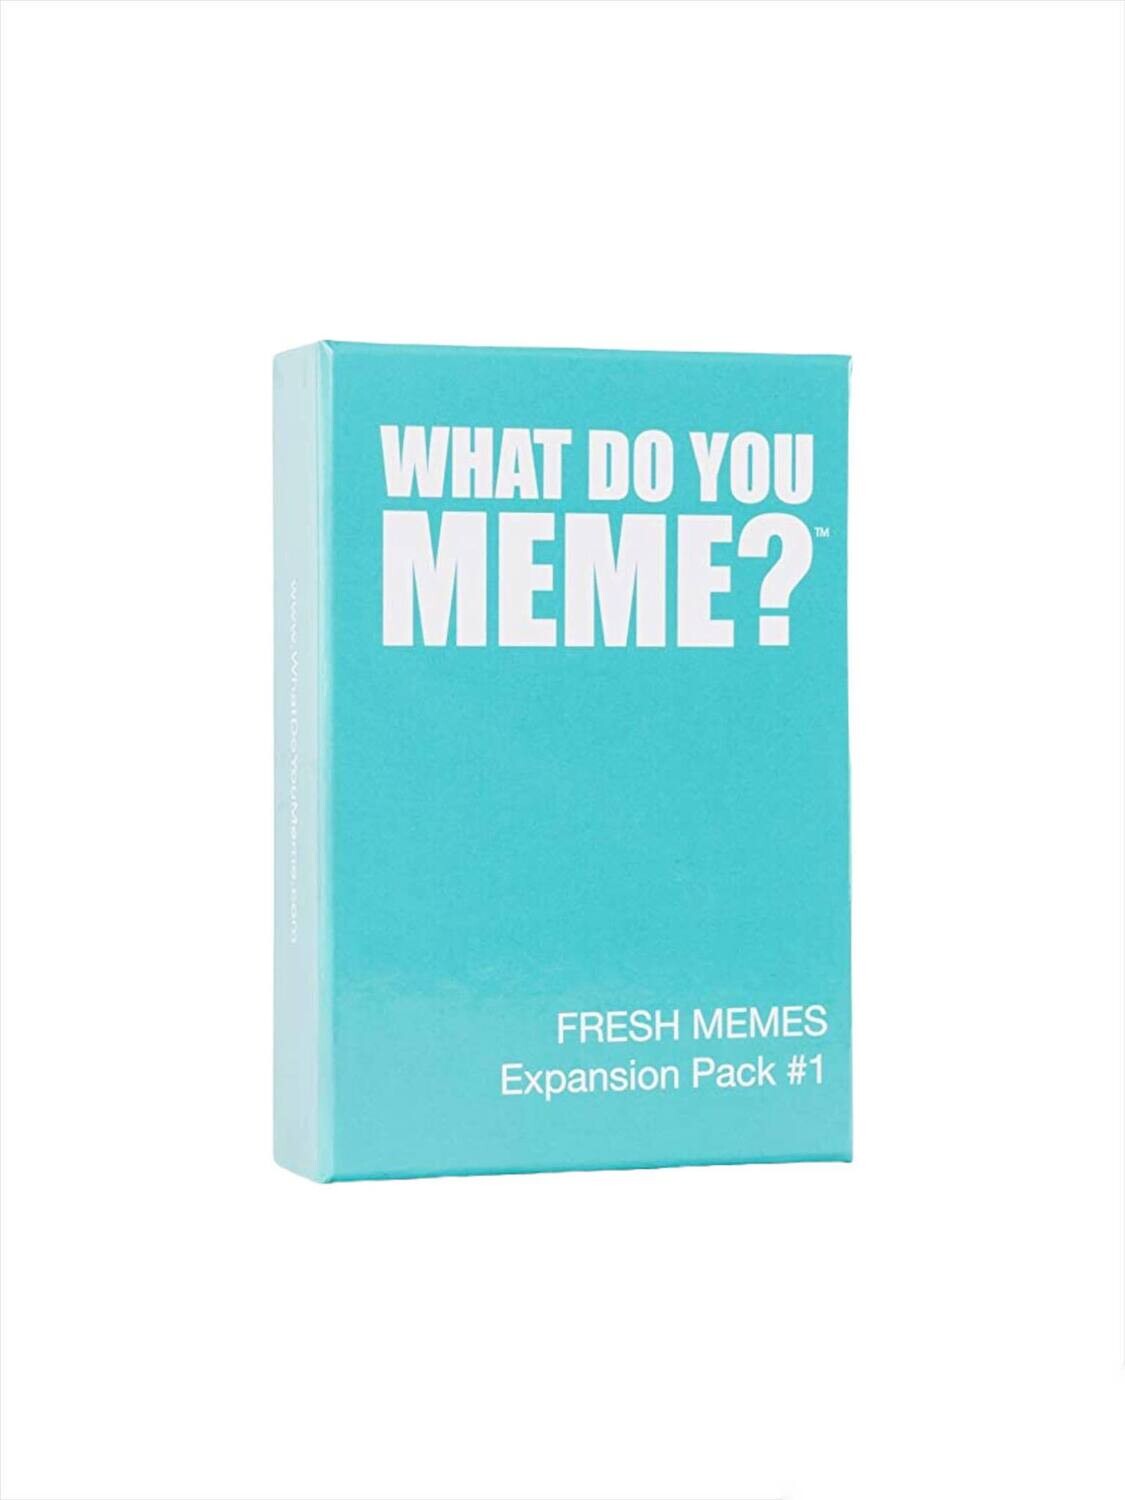 სამაგიდო თამაში - მემე/what do you fresh memes